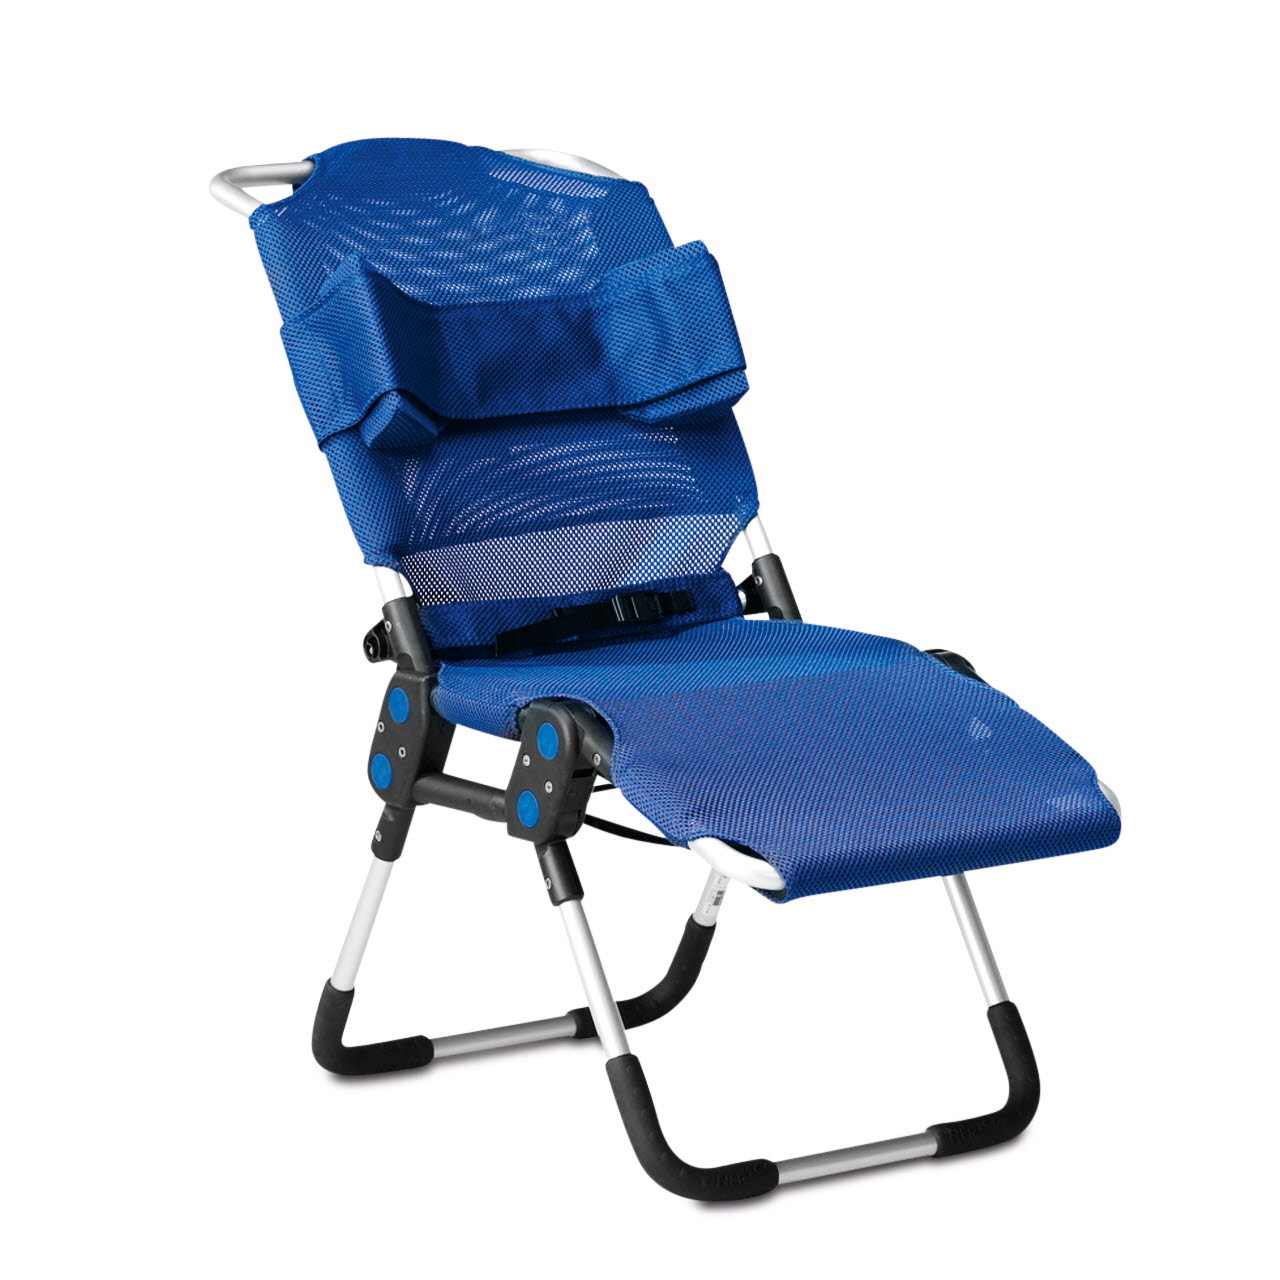 Кресло для купания. Стул-гамак для ванны r82 Manatee (Манати). Кресло для детей инвалидов с ДЦП R-82. Санитарное кресло r82. Шезлонг r82.